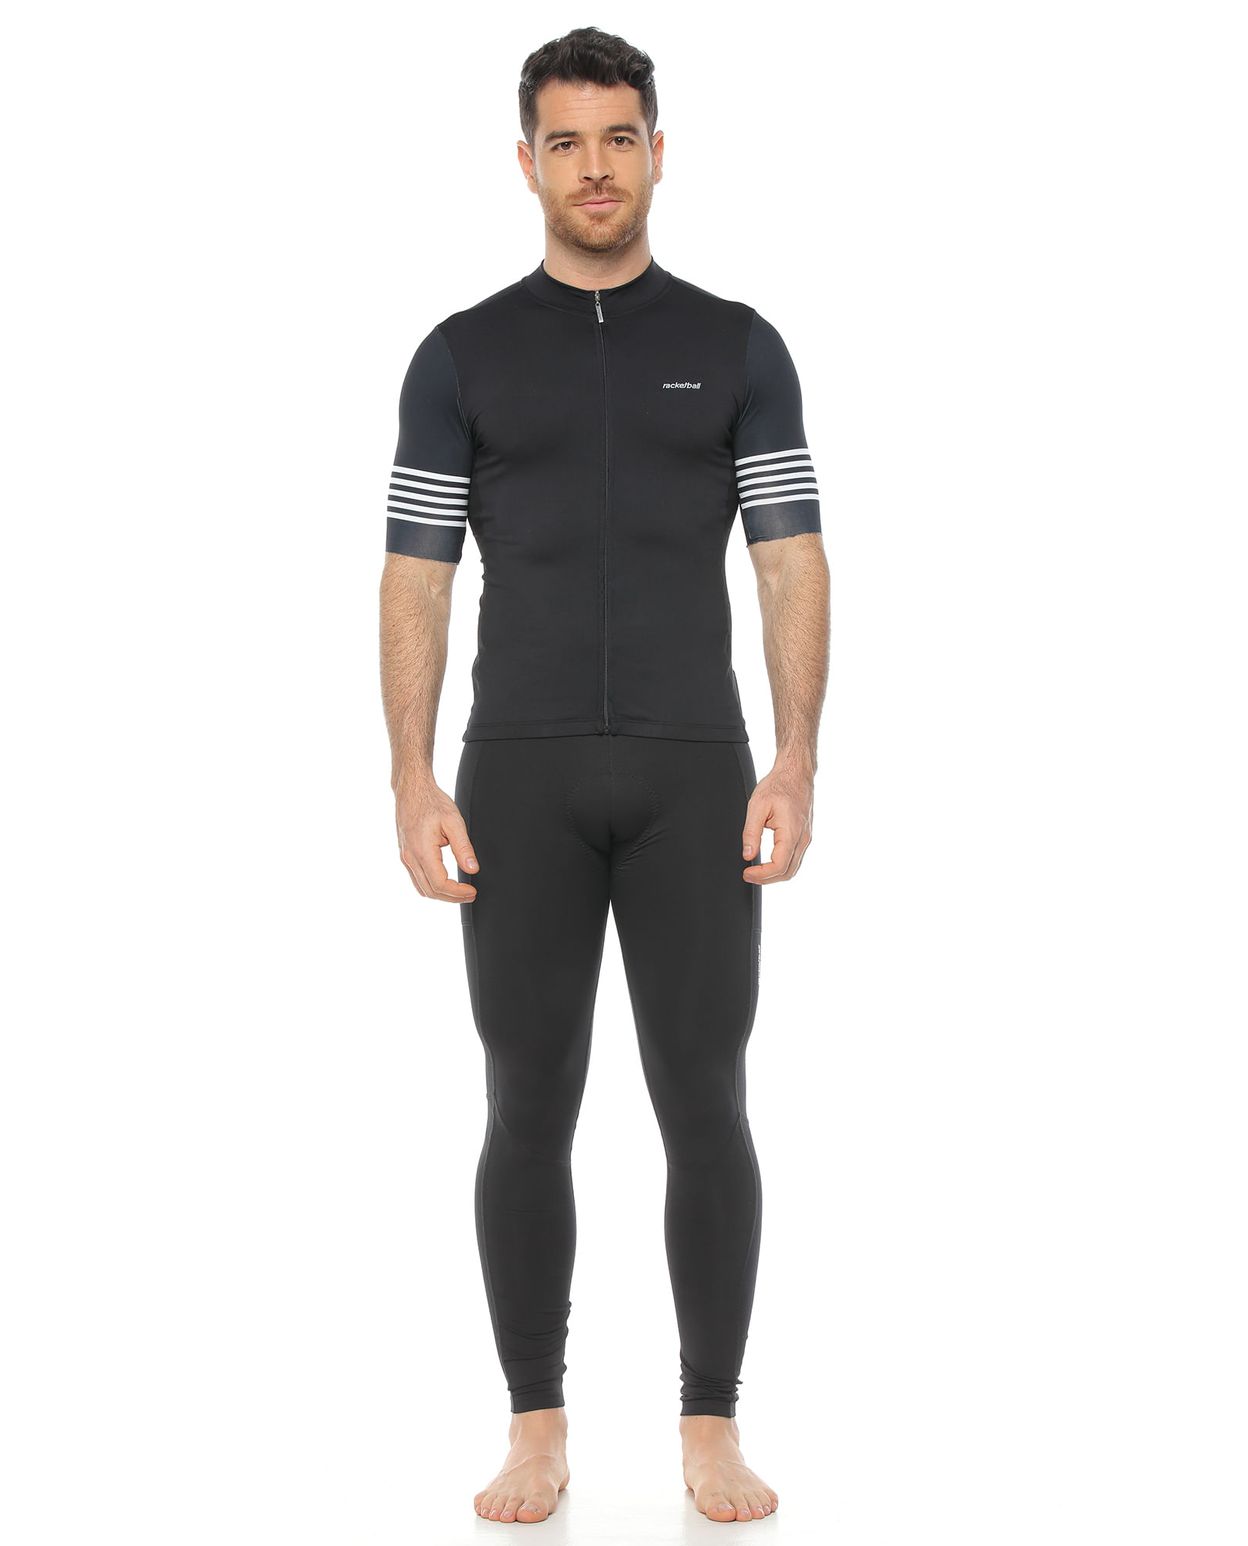 modelo con licra para ciclismo con badana y camiseta de ciclismo unisex color negro  para hombre cuerpo completo